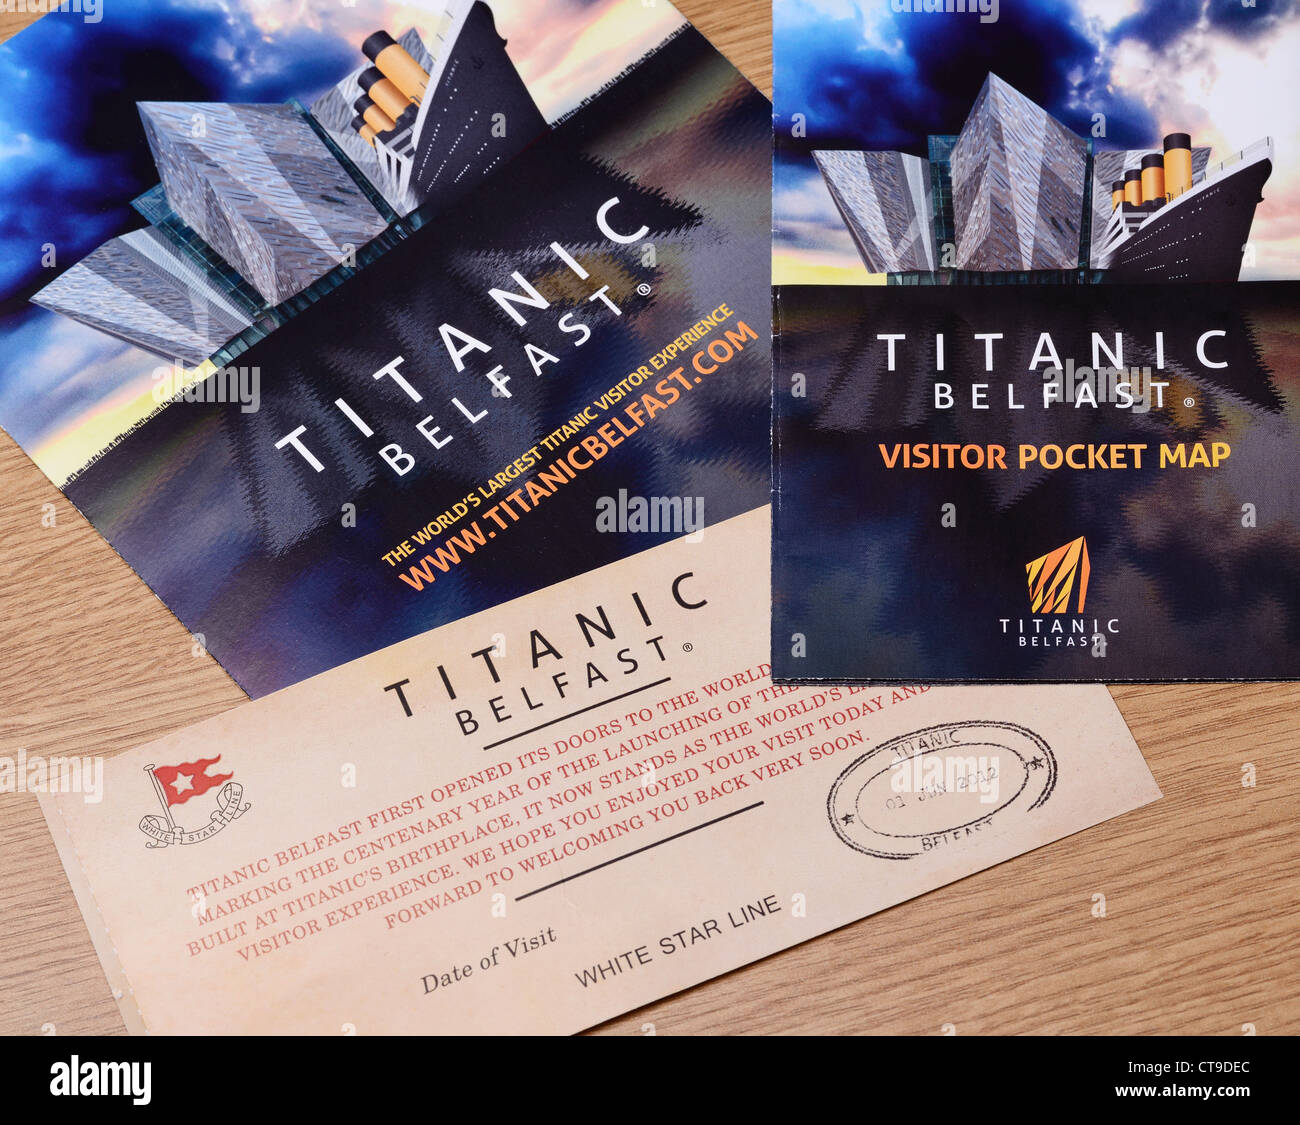 Belfast Titanic Exposición folleto y ticket Foto de stock